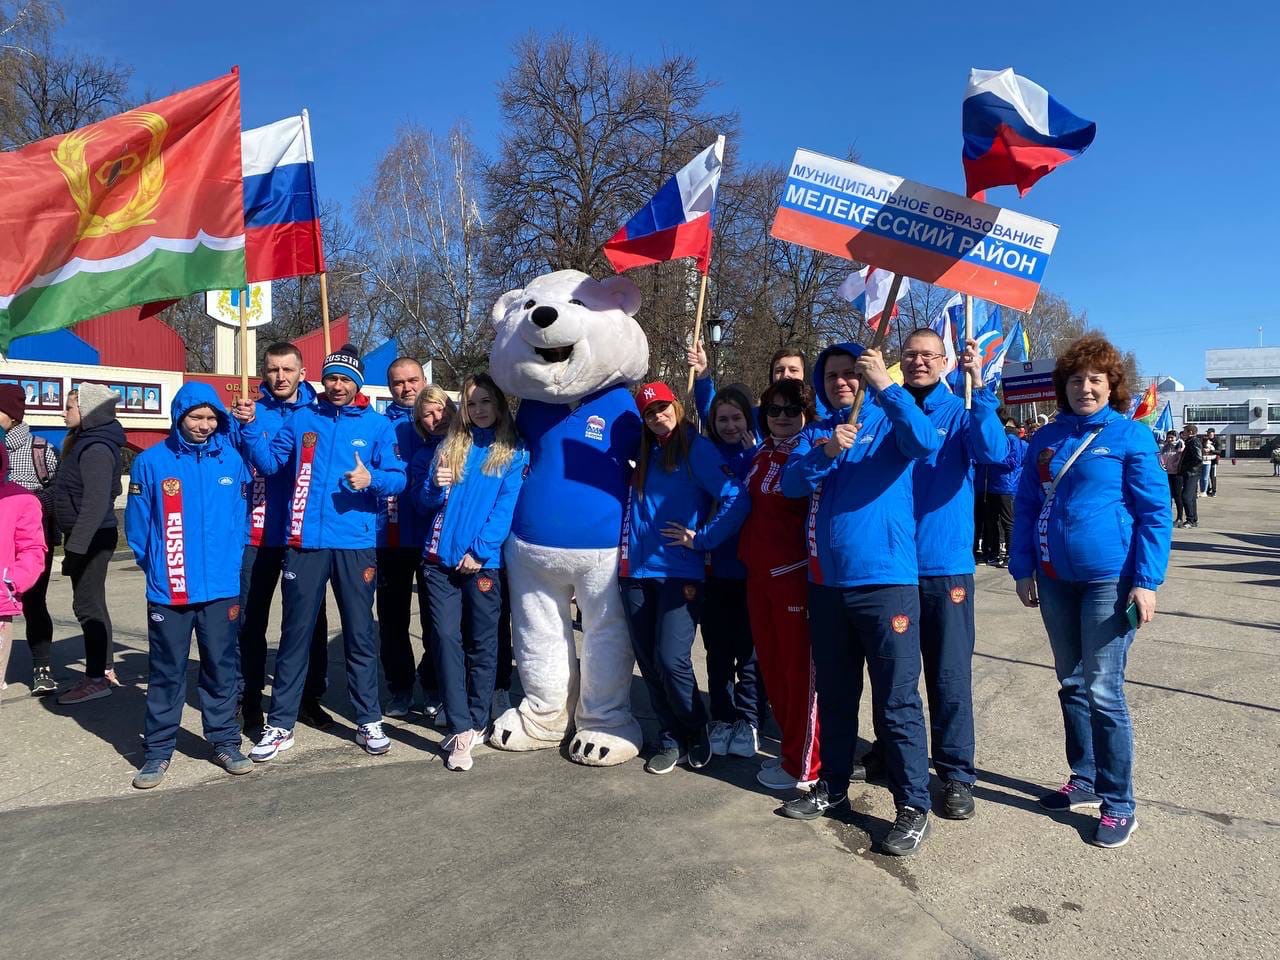 Поддерживаем наших ребят на областной легкоатлетической эстафете, которая проходит сегодня в Ульяновске